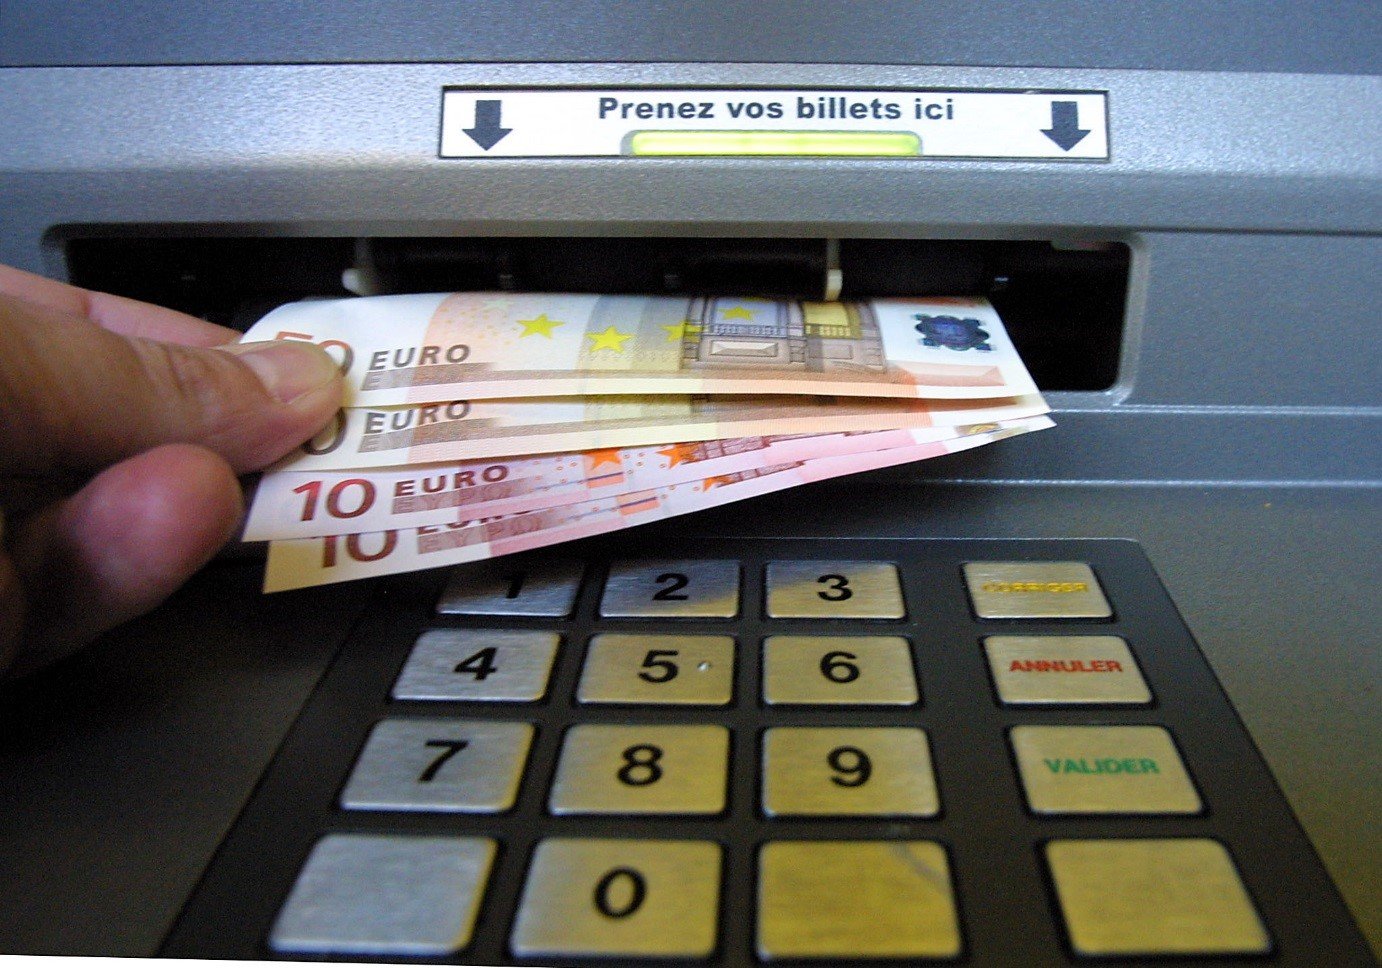 dab.jpg?resize=412,232 - Grève: risque d'une pénurie de billets aux distributeurs suite à la mobilisation des salariés de la Banque de France